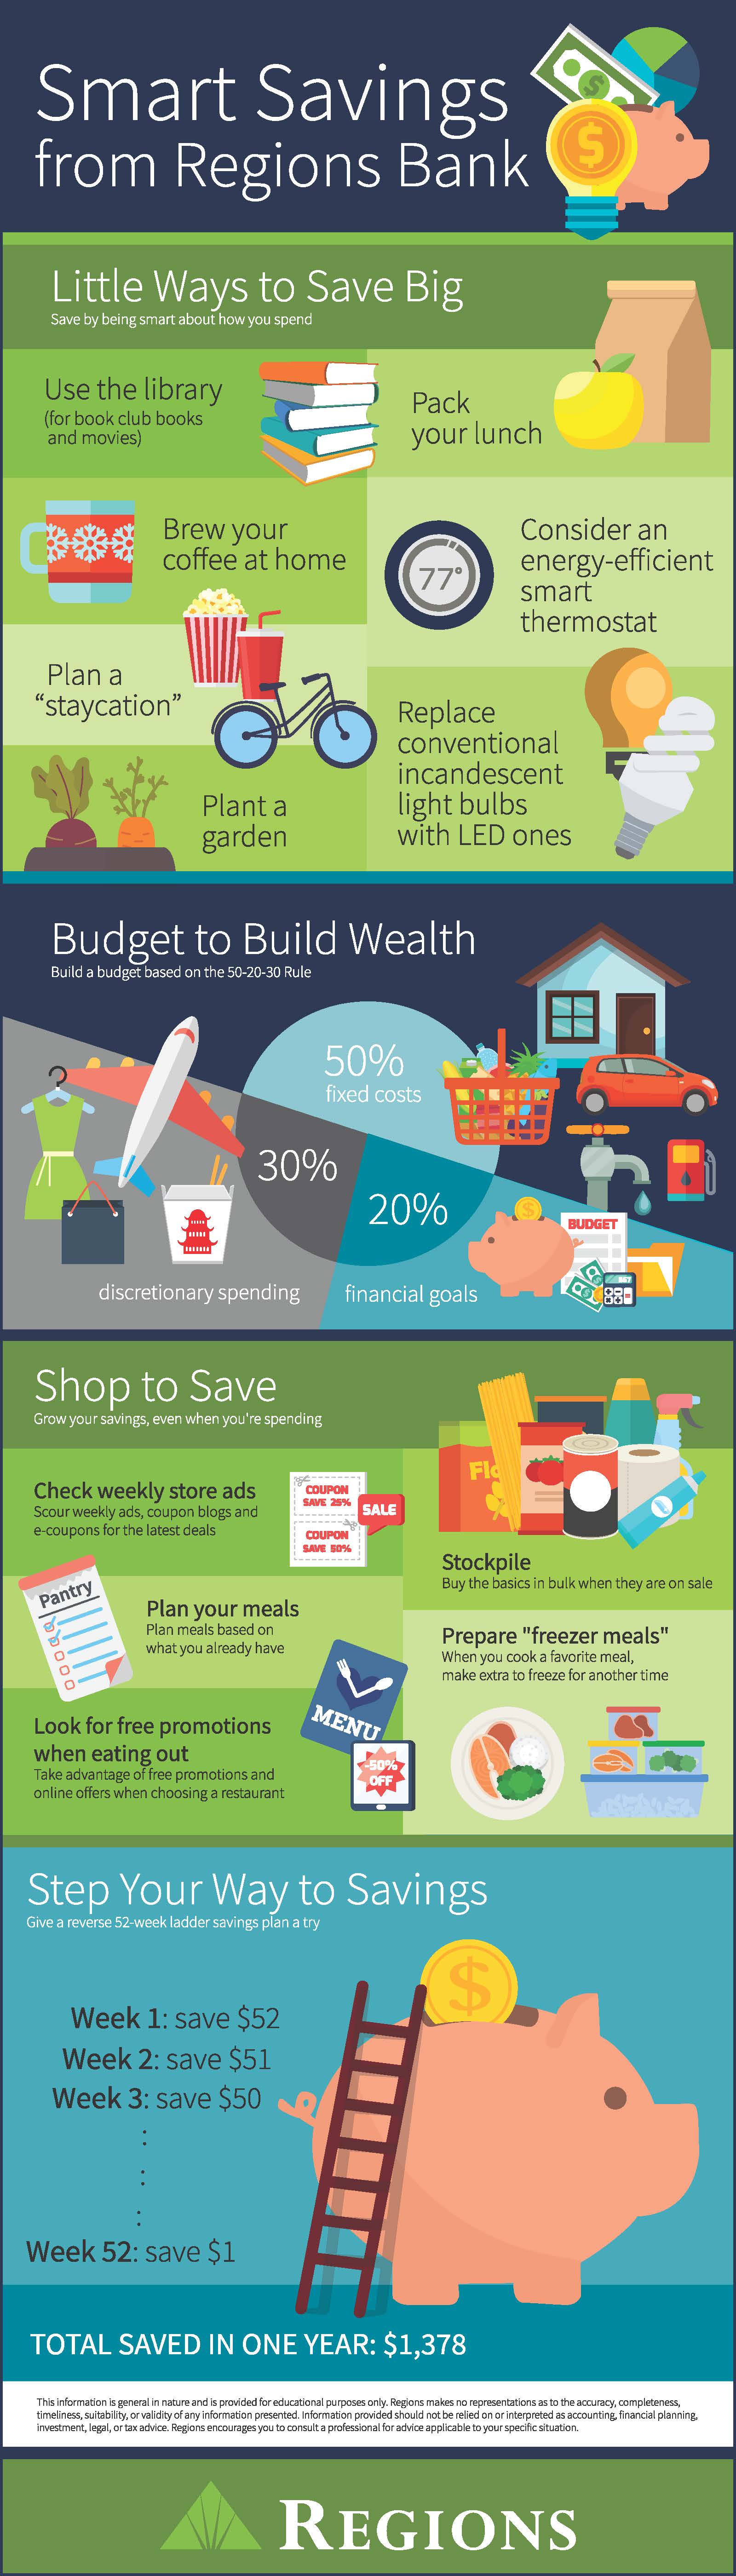 Smart Savings infographic